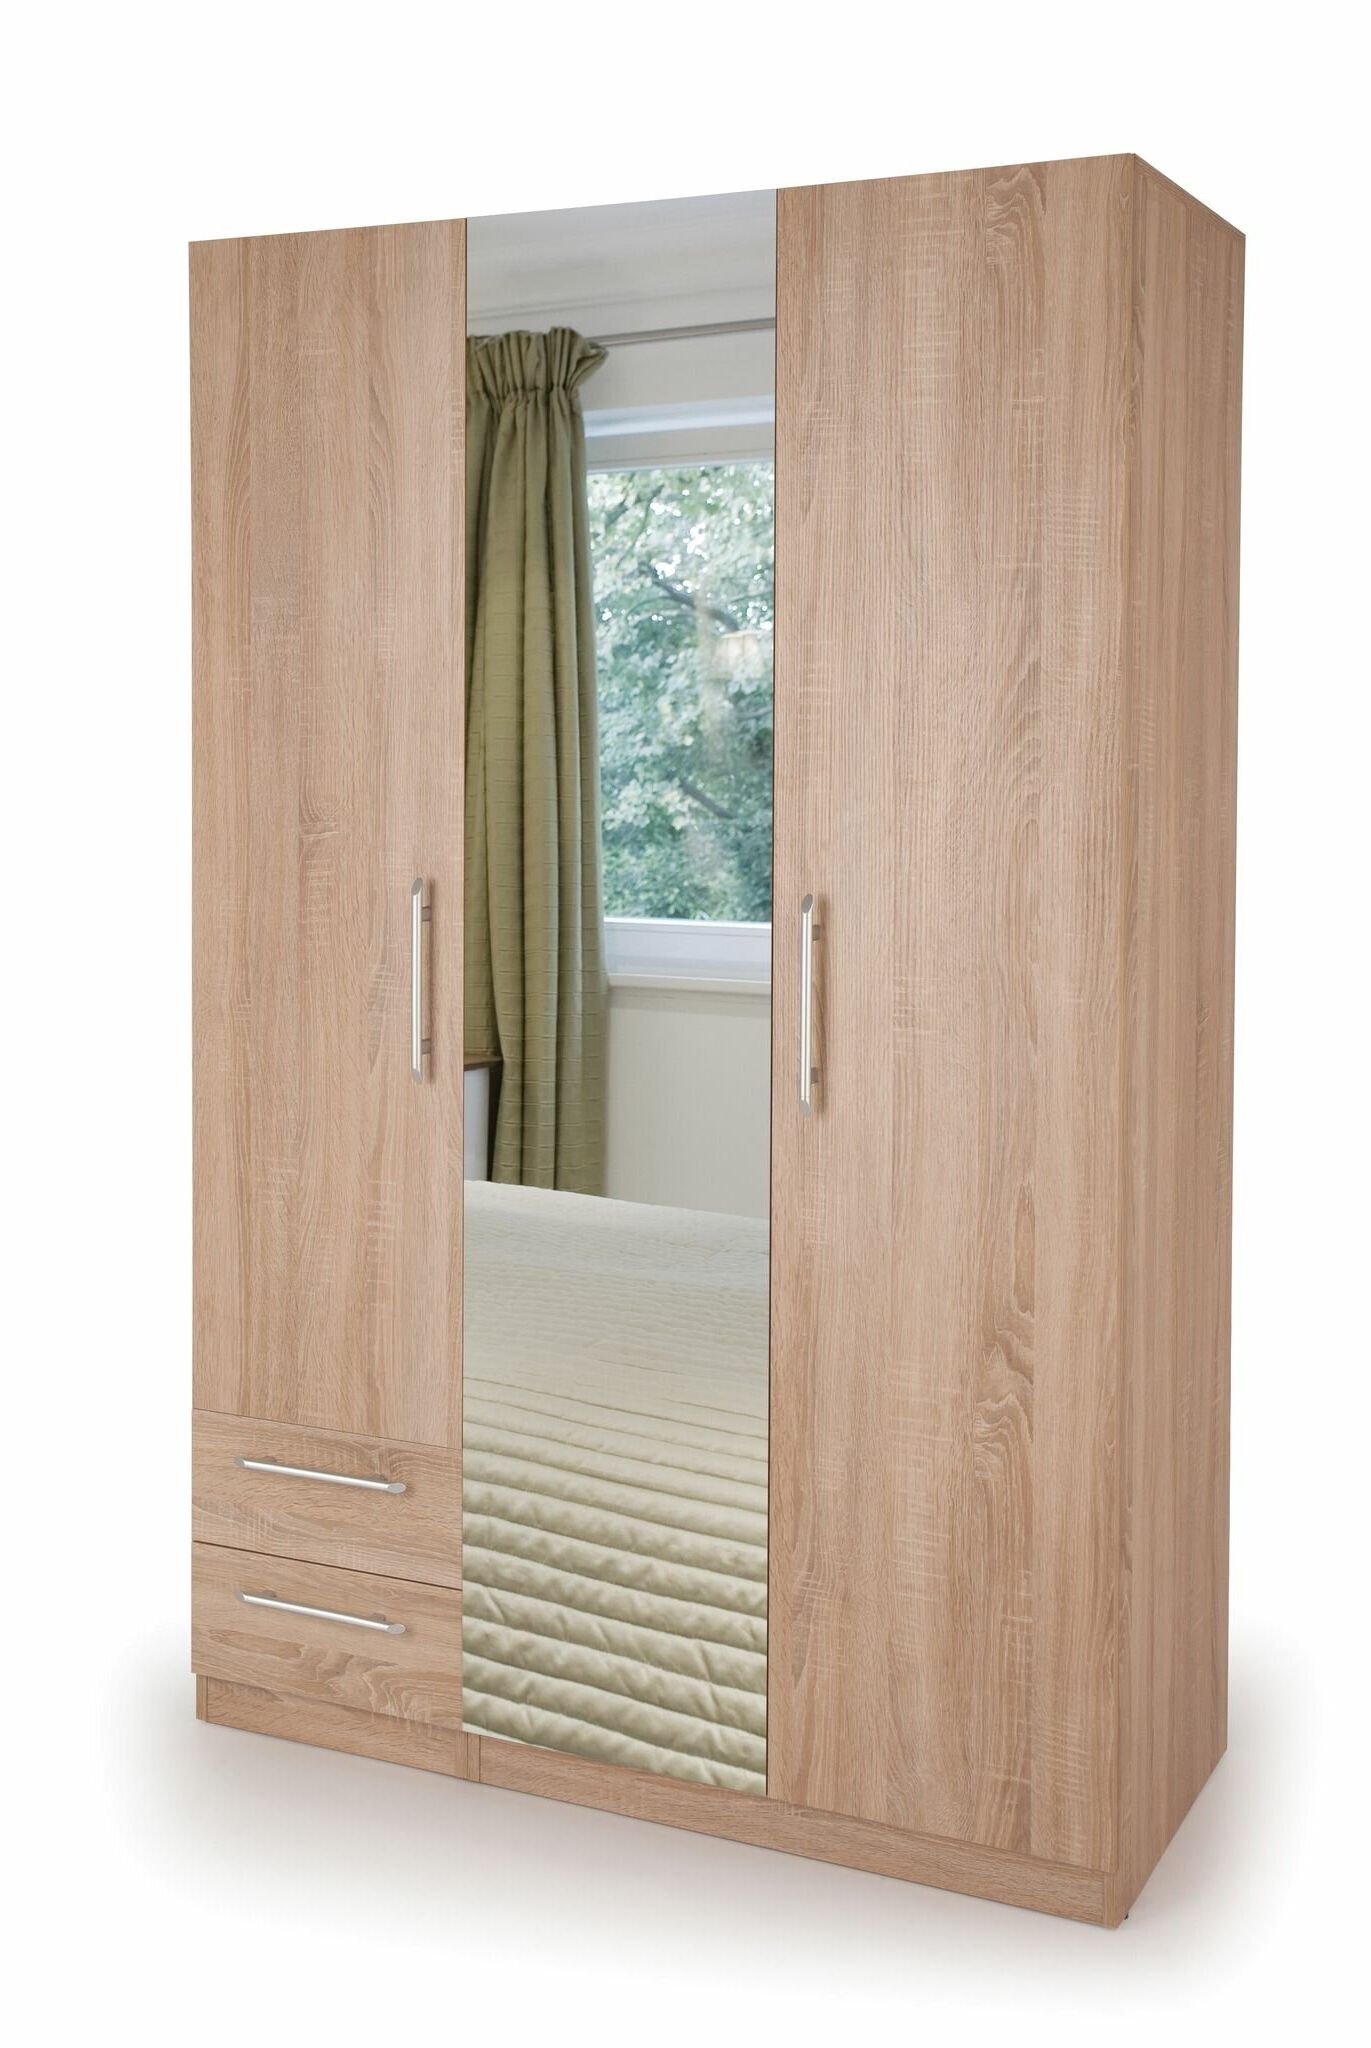 Brayden Studio Houghtaling 3 Door Wood Wardrobe & Reviews | Wayfair.co.uk Throughout Wardrobes 3 Door With Mirror (Gallery 16 of 20)